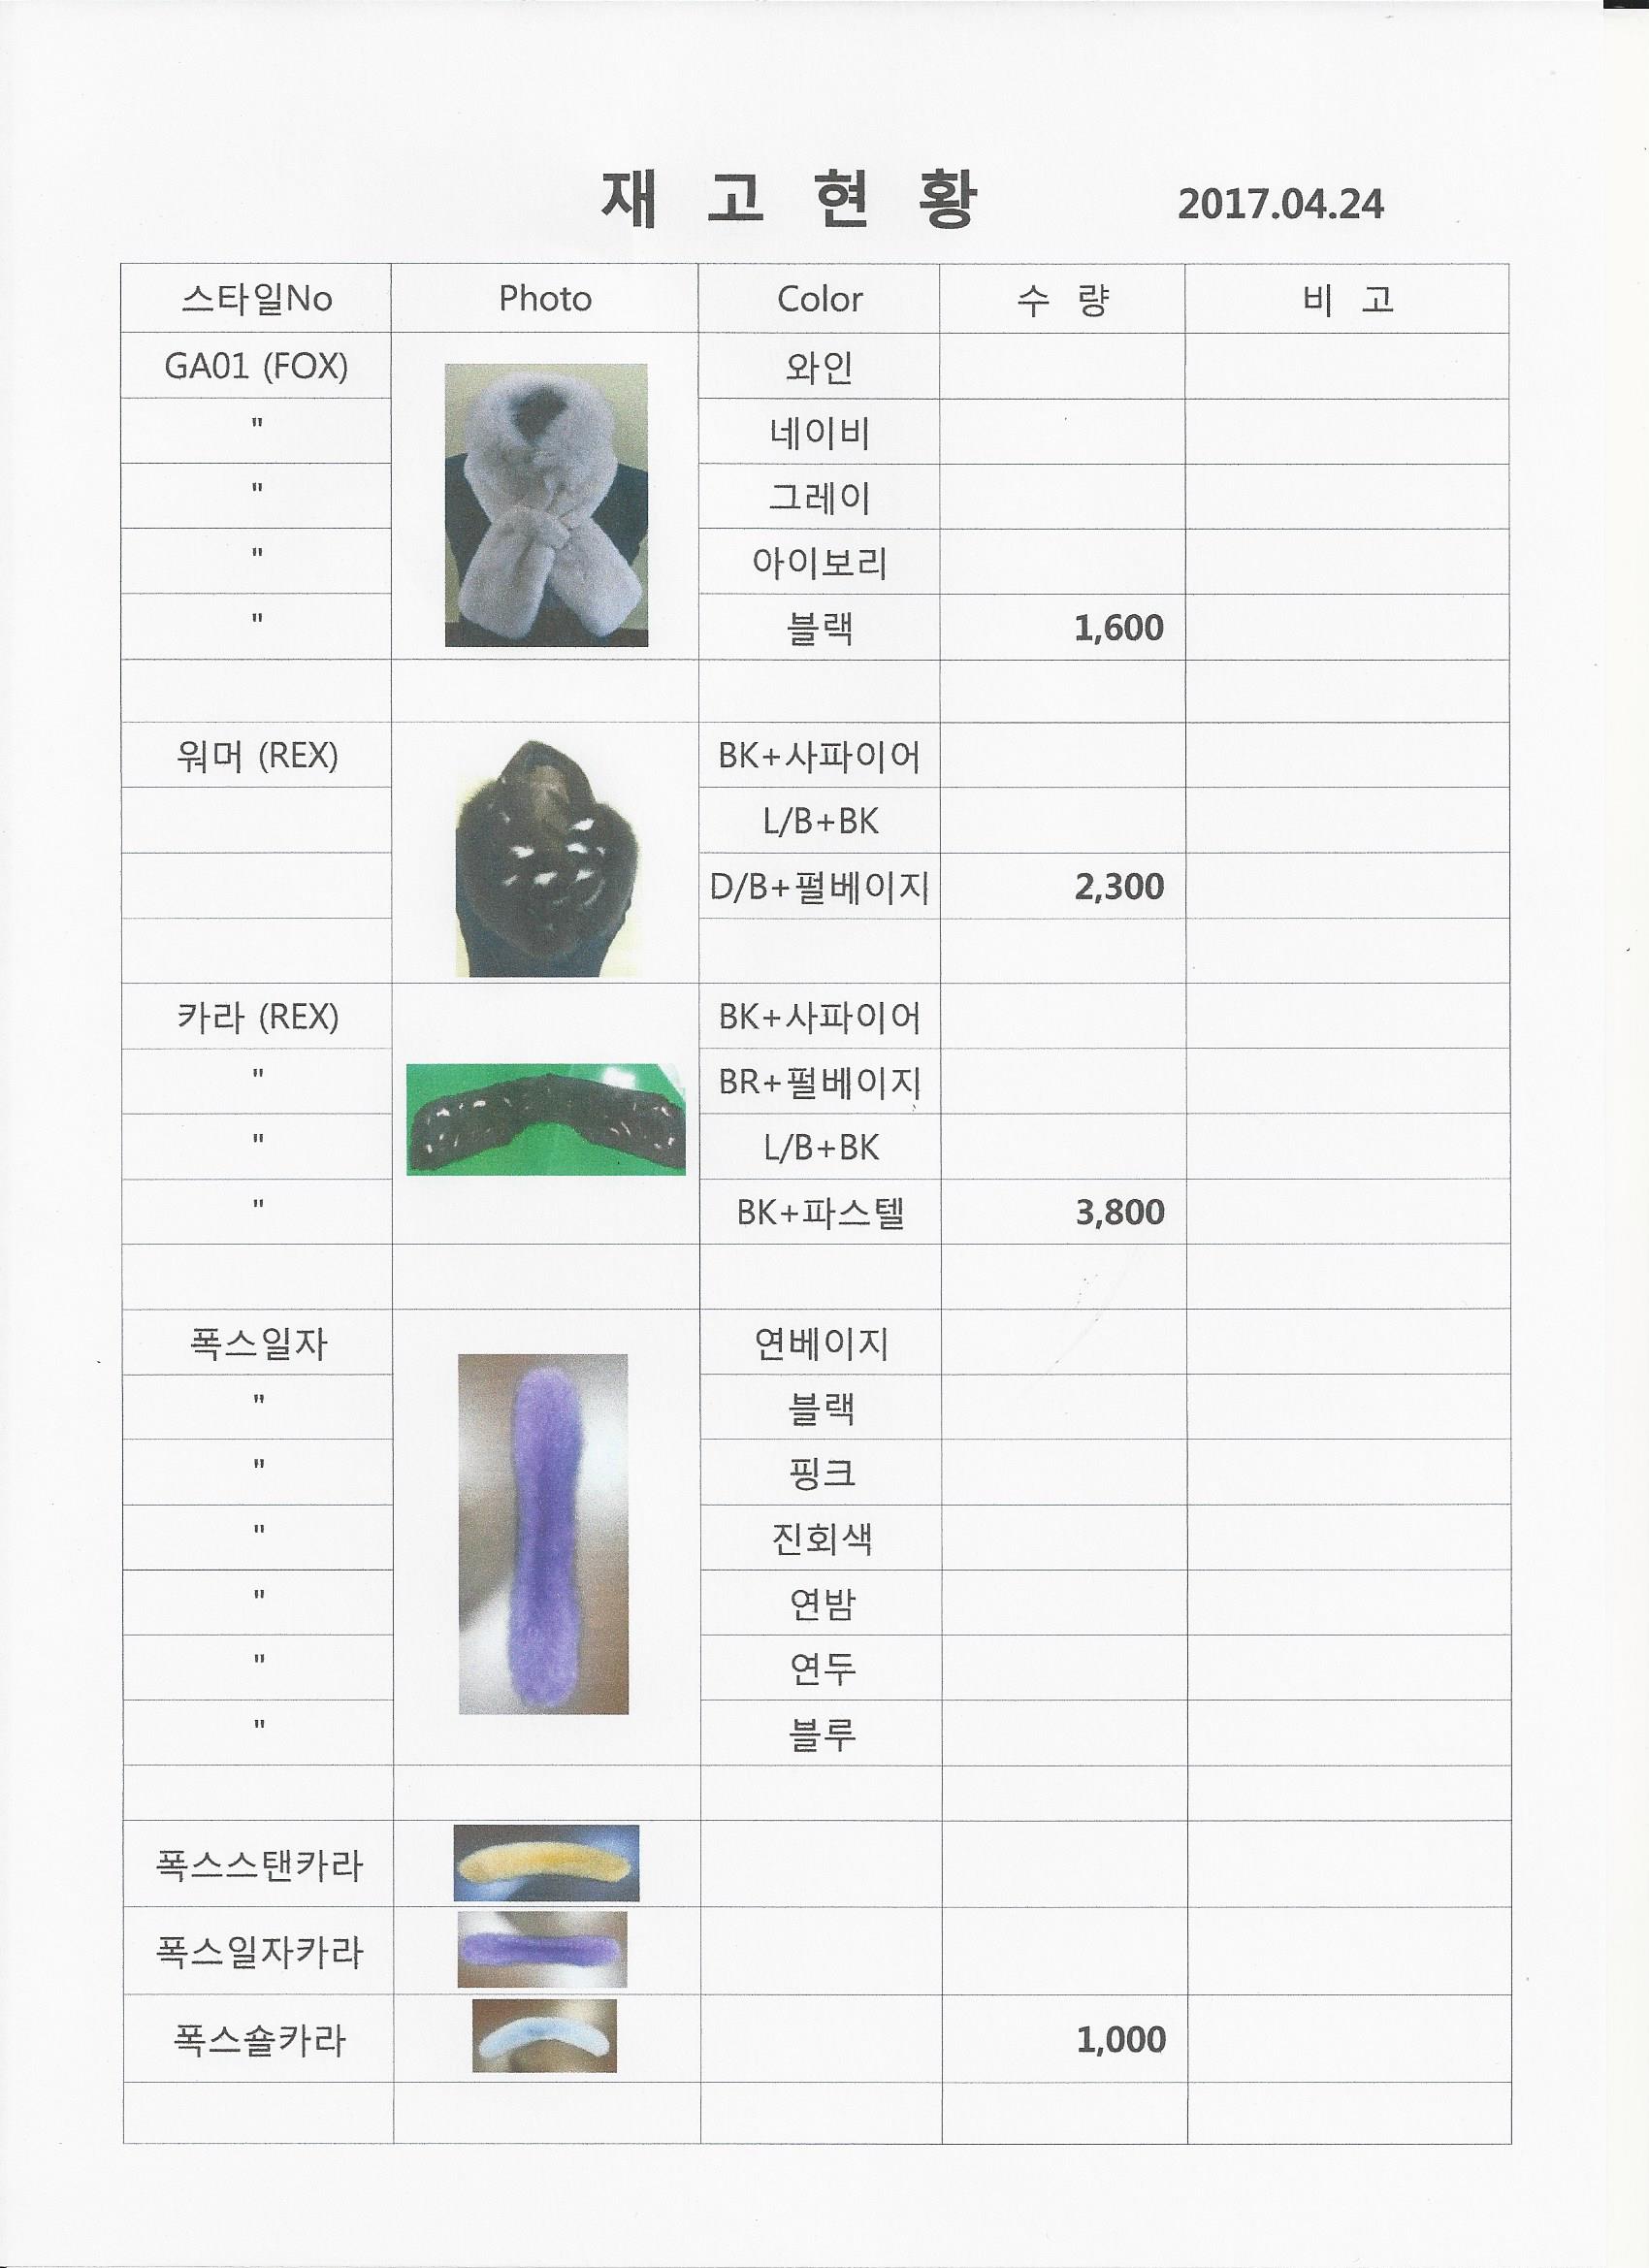 23201 - Fur shawl Korea